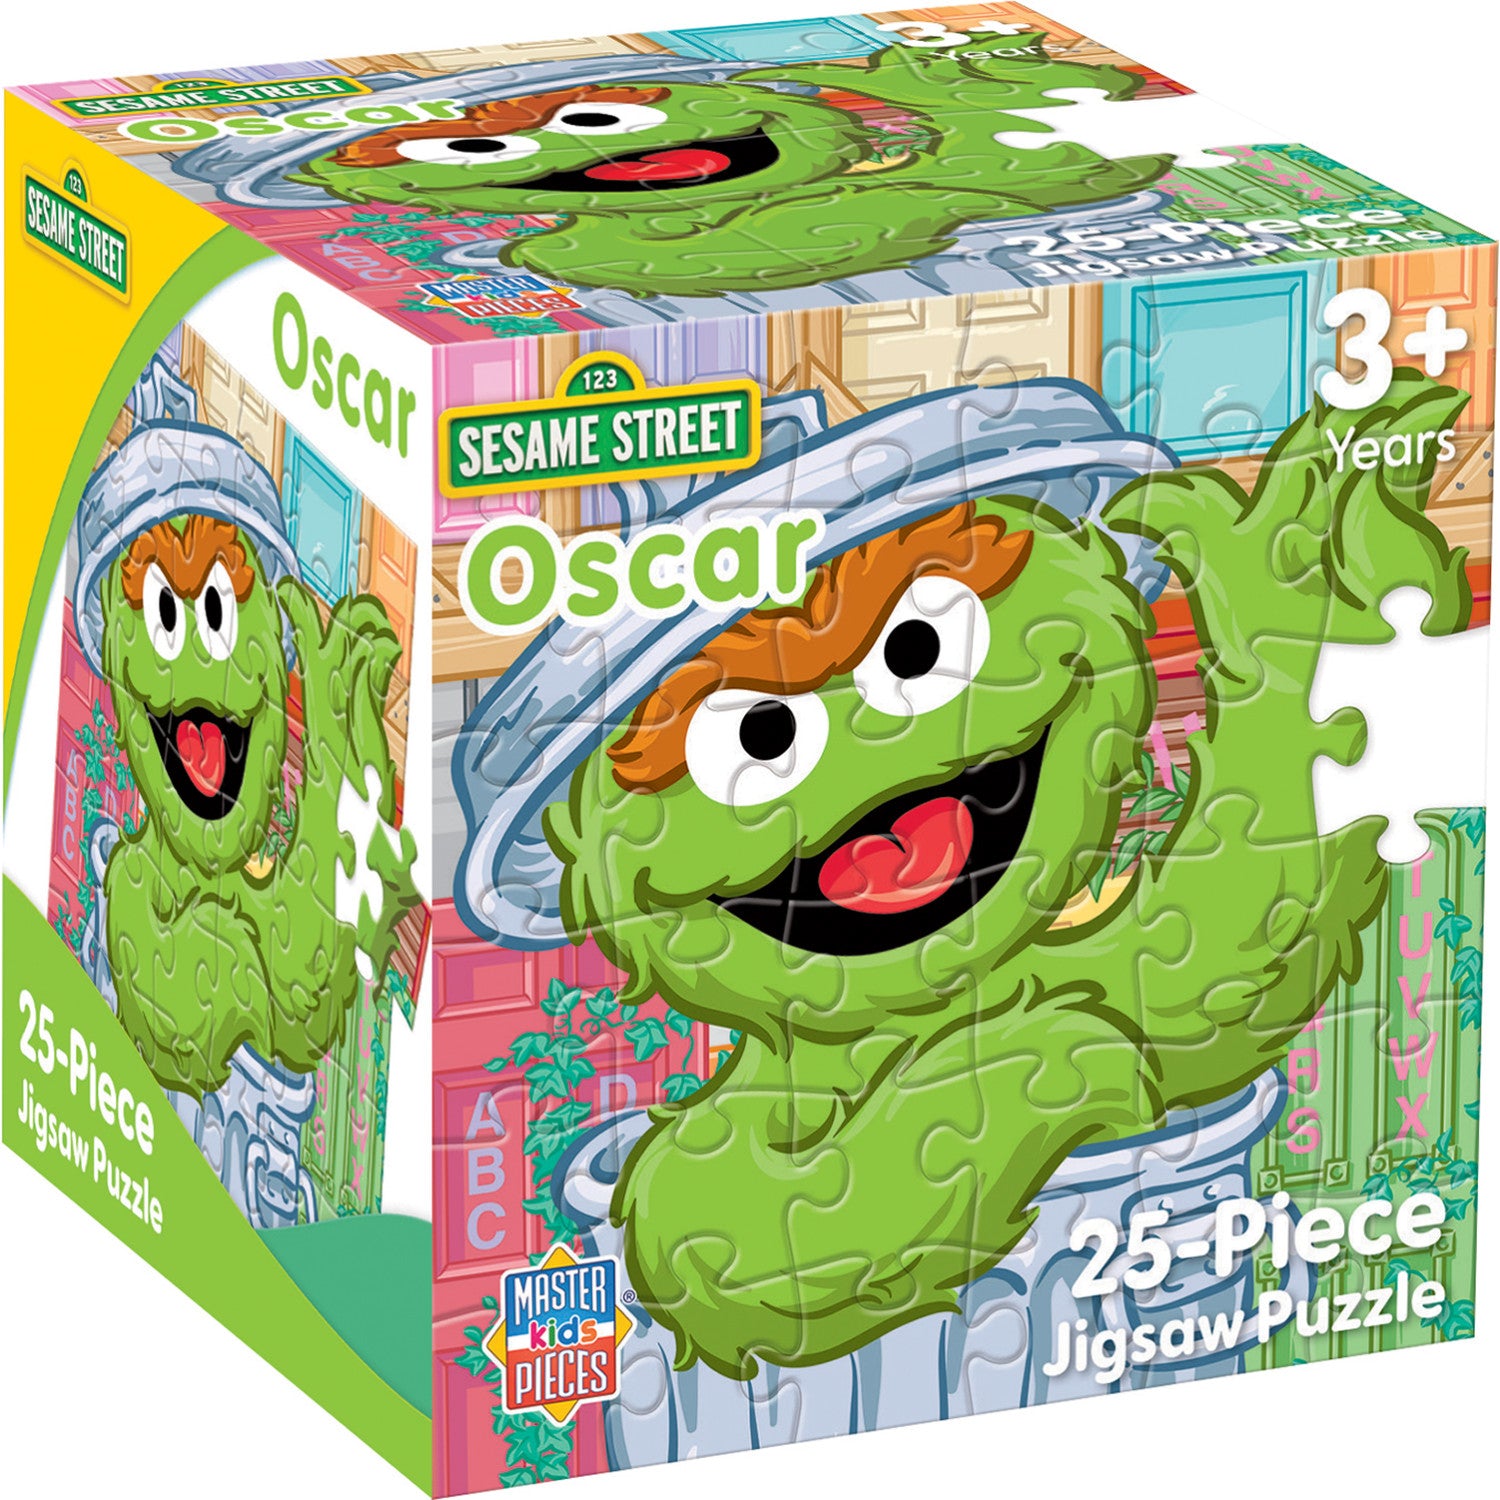 Sesame Street - Oscar the Grouch 25 Piece Jigsaw Puzzle